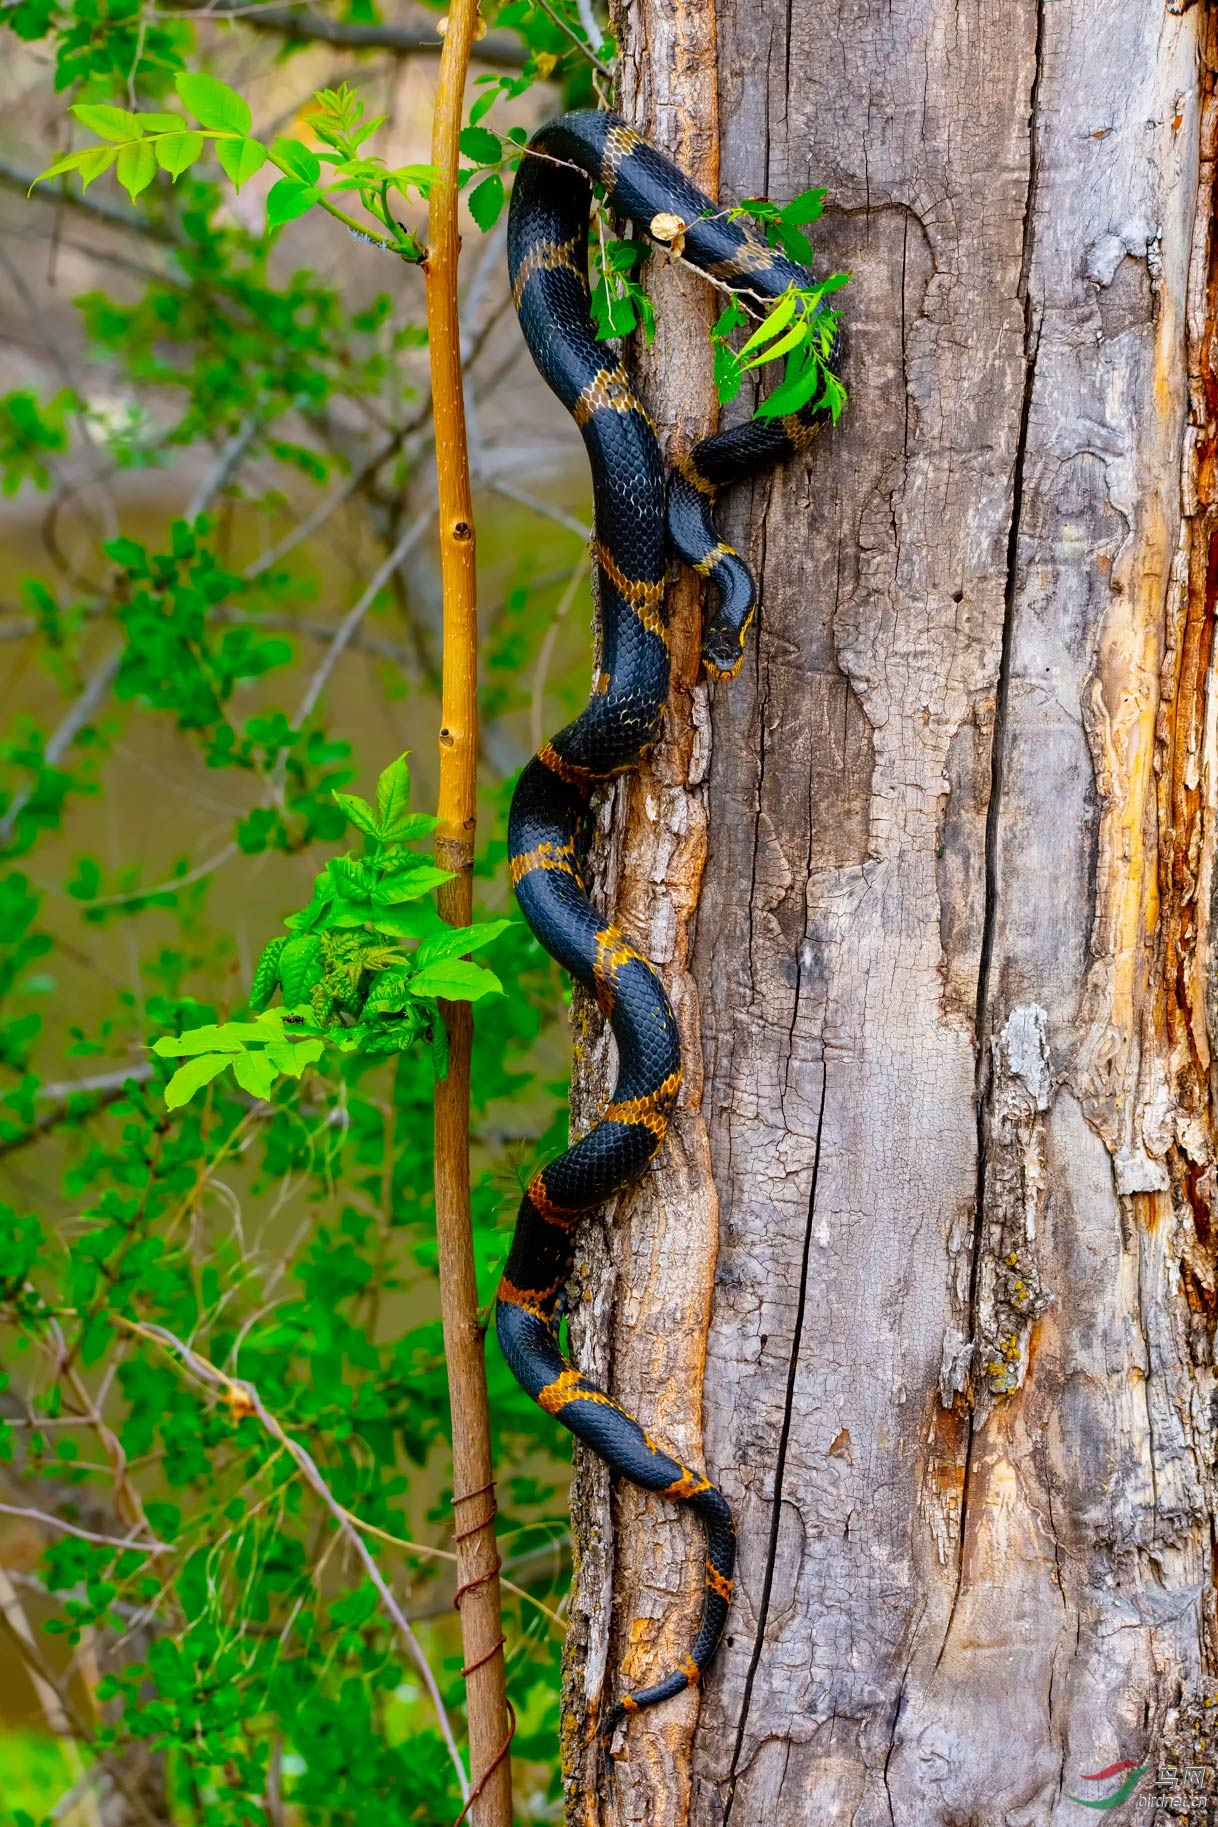 热带雨林的毒蛇图片